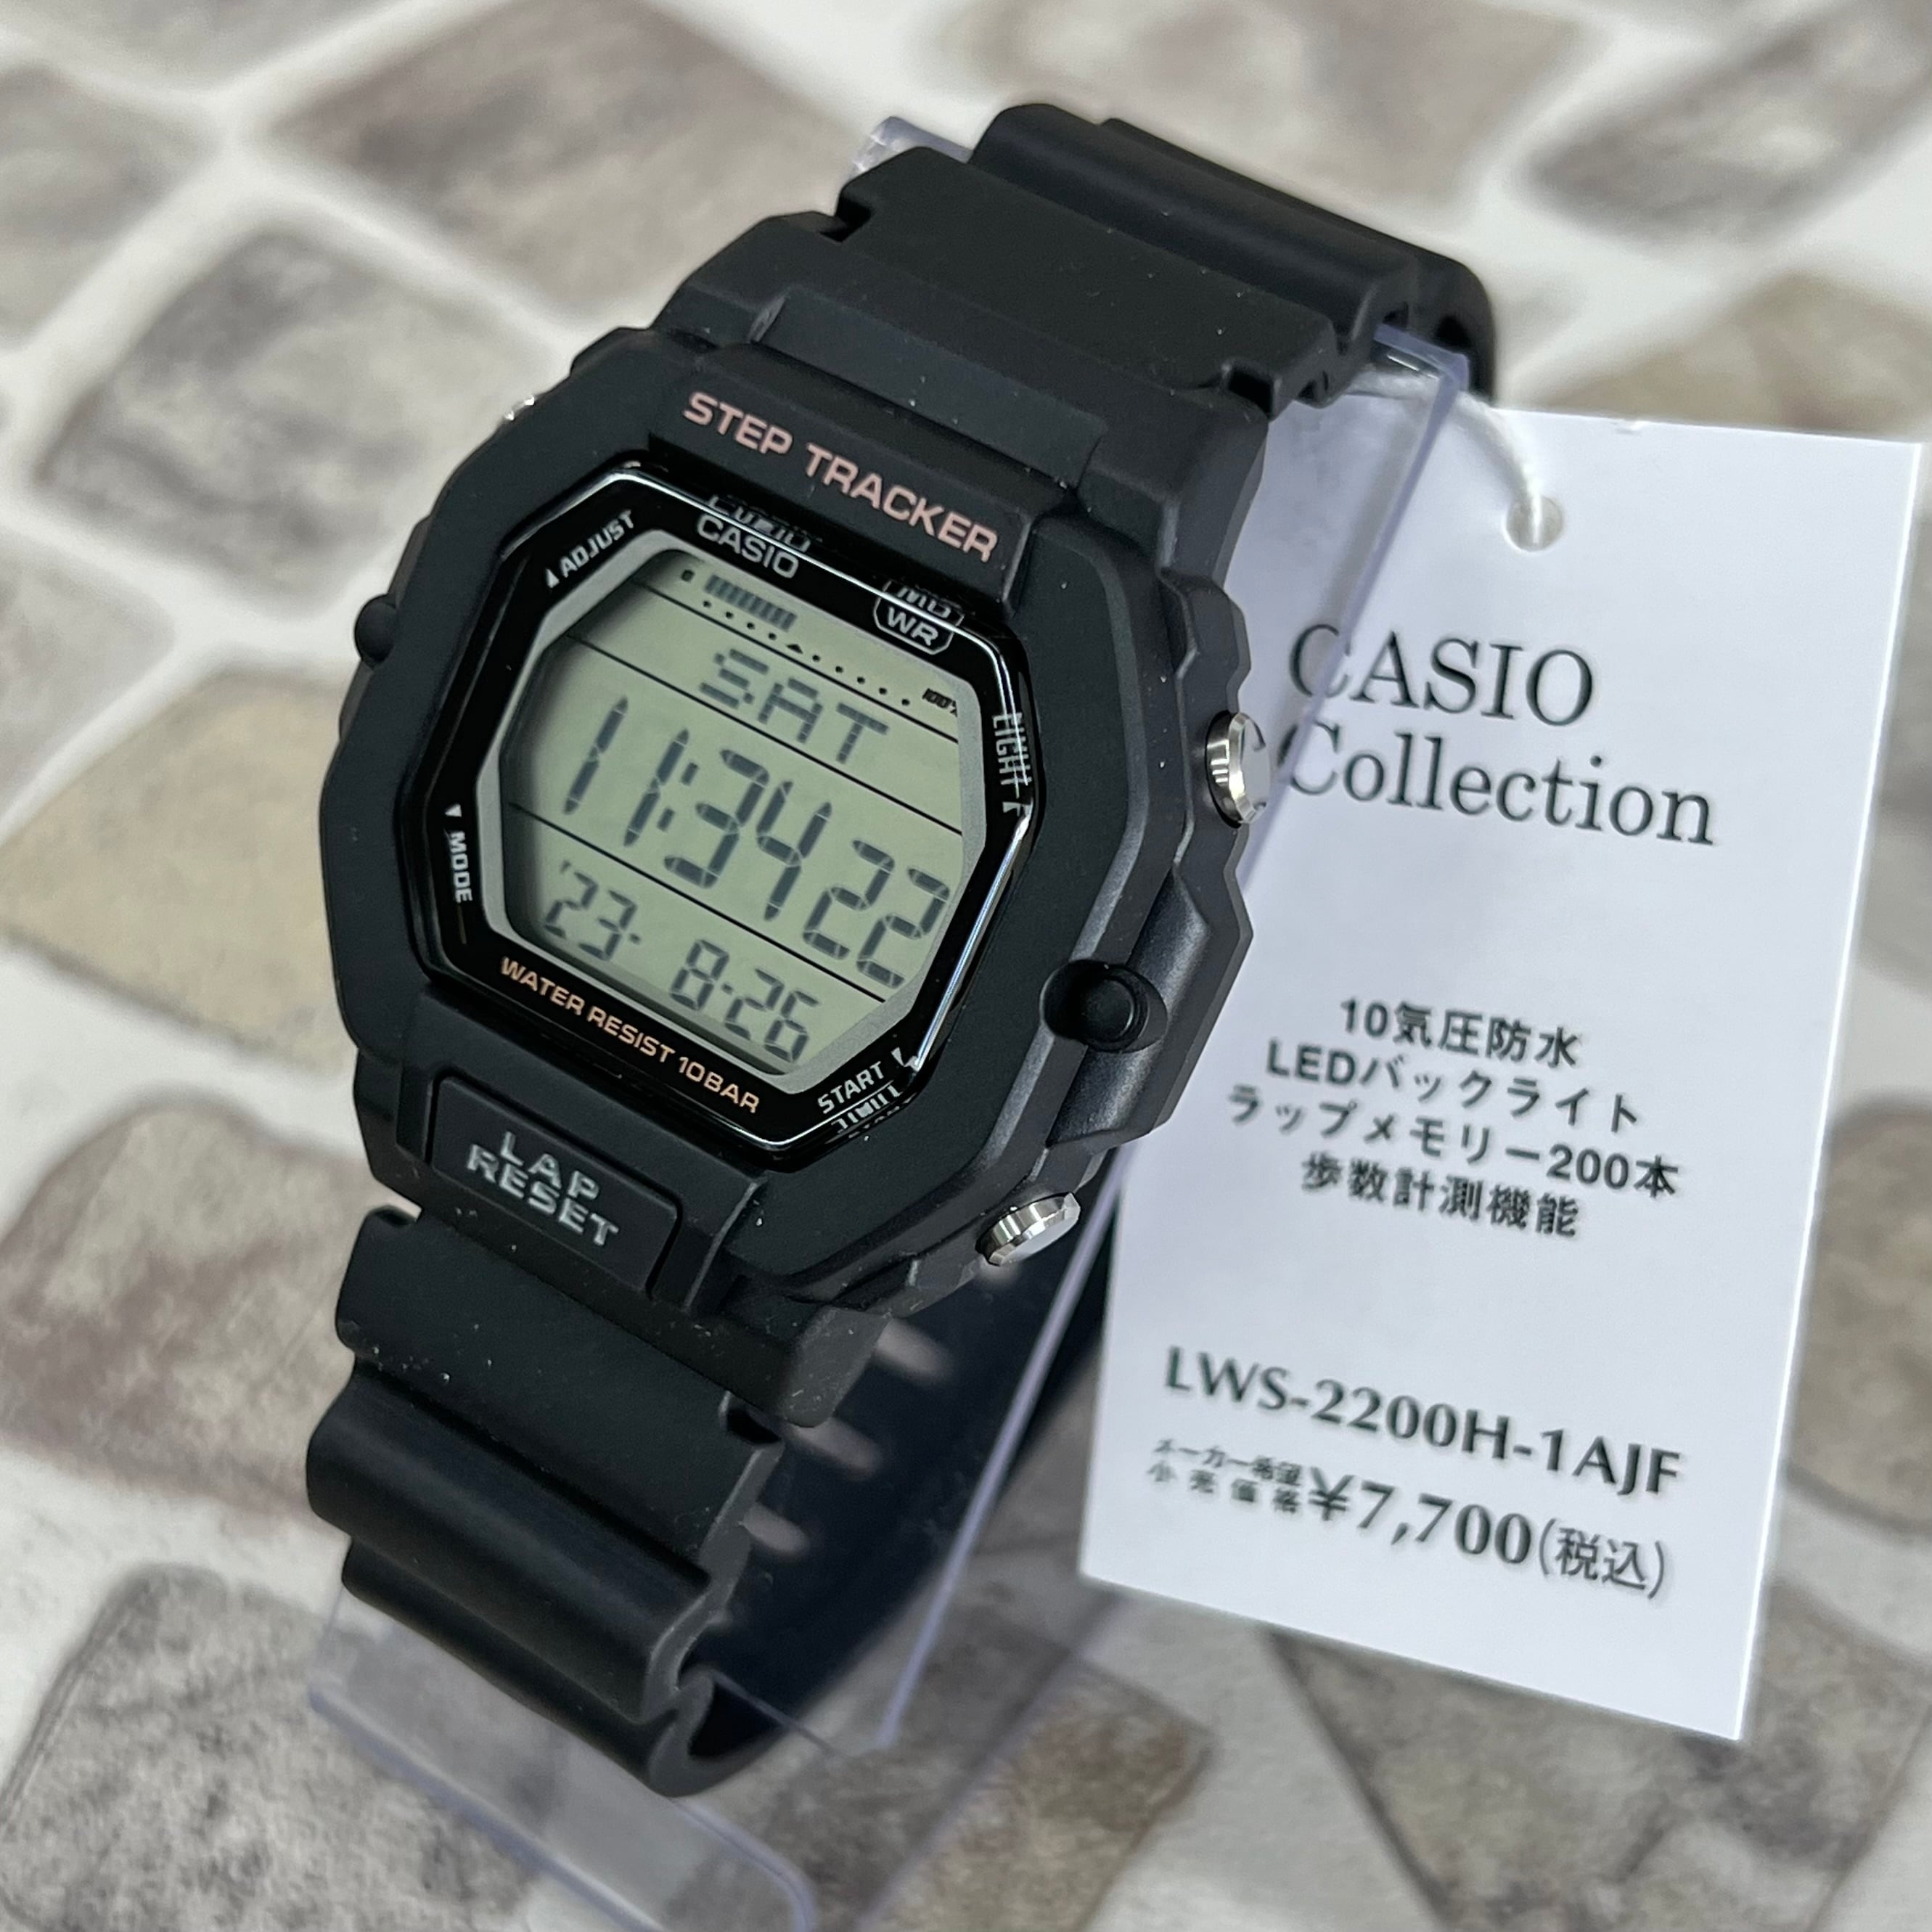 カシオ スタンダード LWS-2200H-1AJF デジタル 歩数計測 ブラック